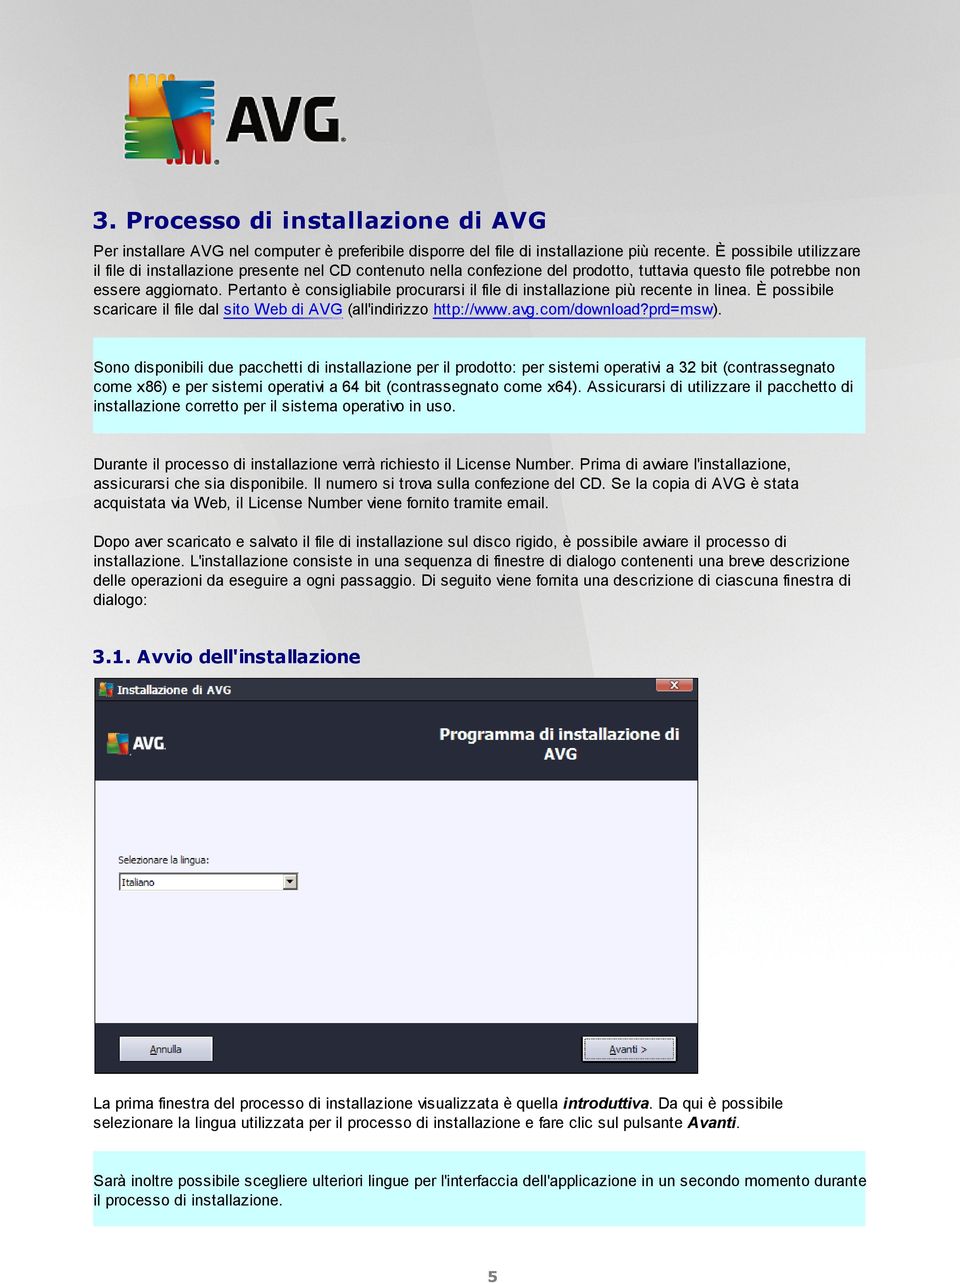 Pertanto è consigliabile procurarsi il file di installazione più recente in linea. È possibile scaricare il file dal sito Web di AVG (all'indirizzo http://www.avg.com/download?prd=msw).